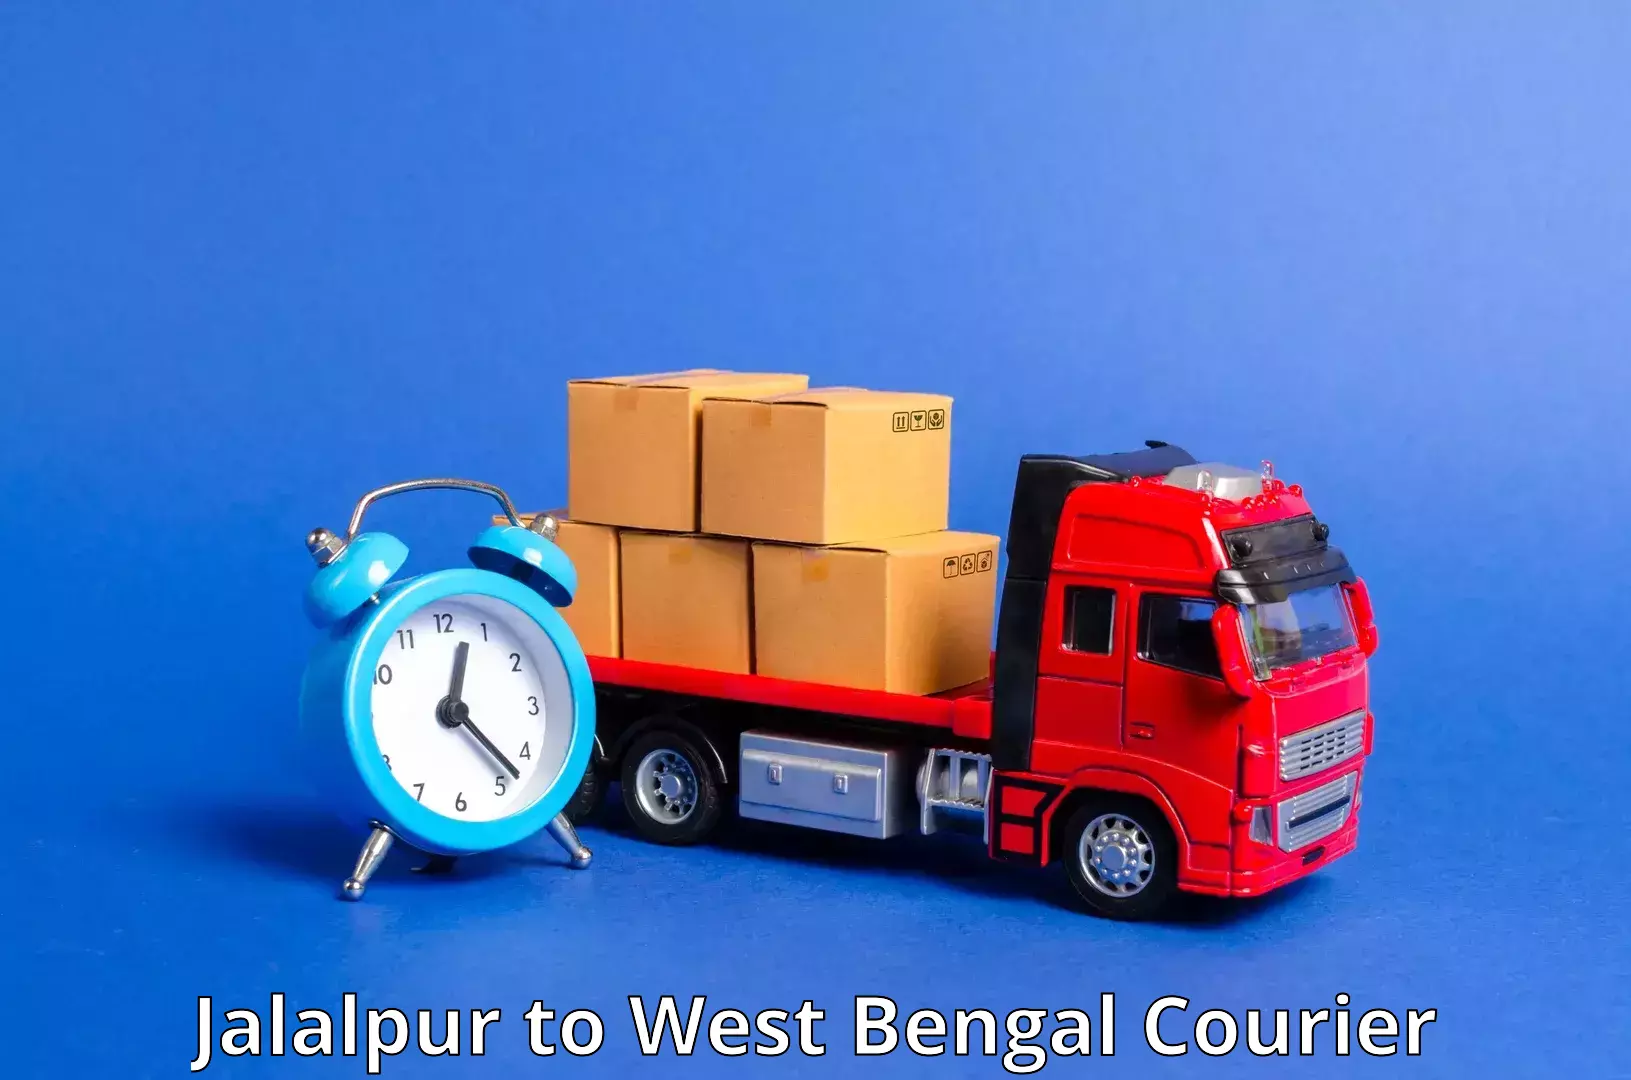 Courier dispatch services Jalalpur to Dantan